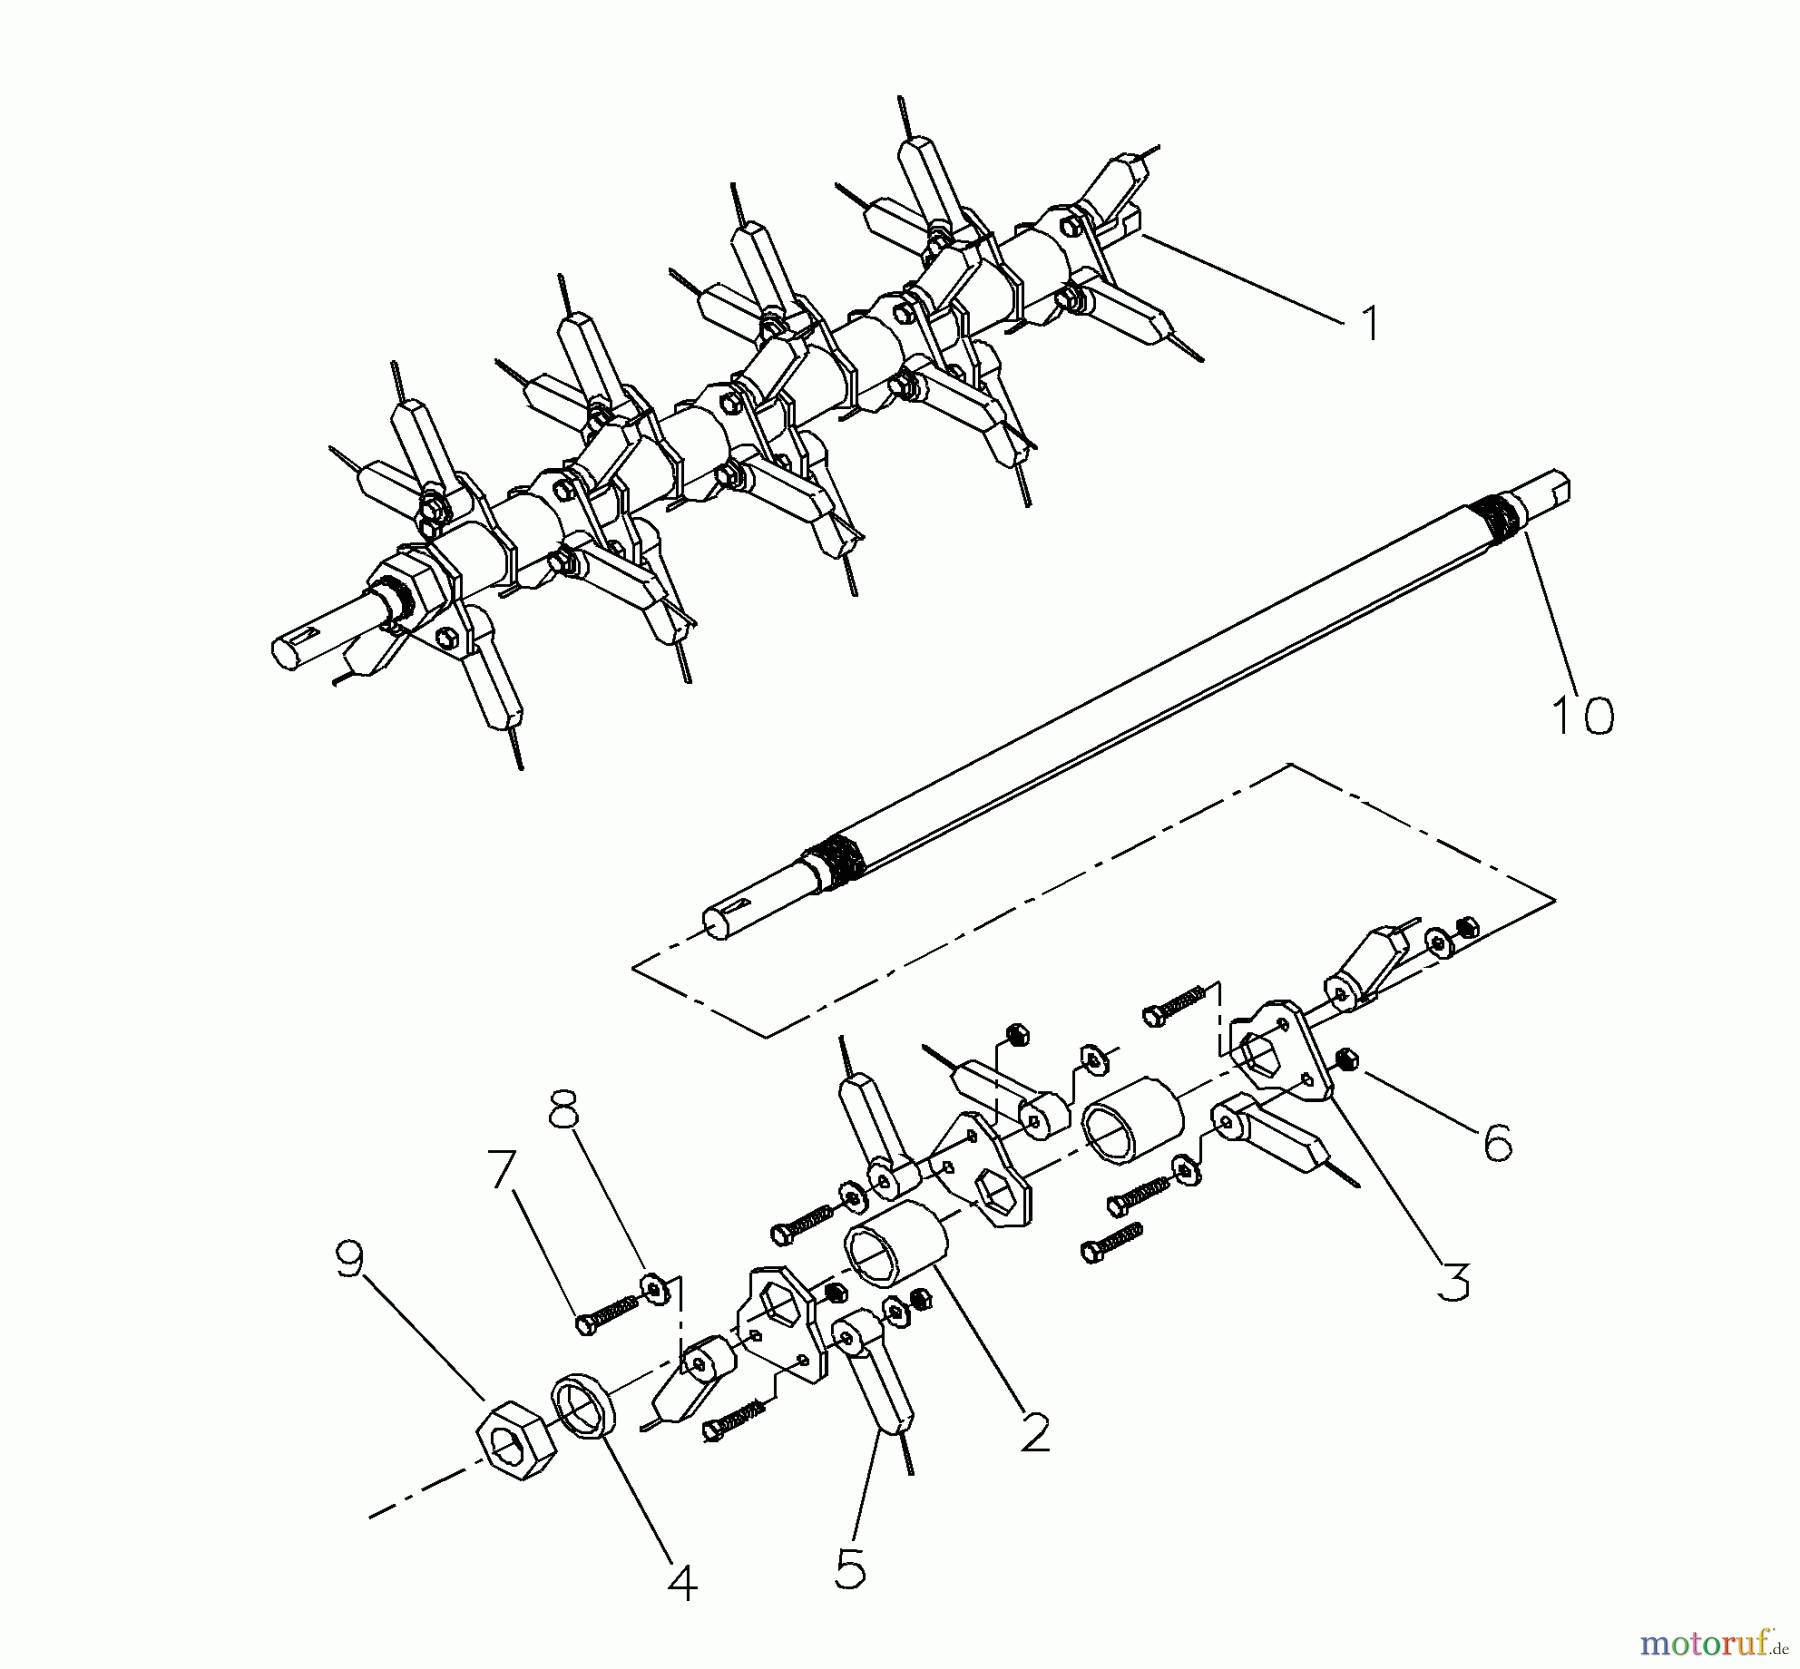  Husqvarna Belüfter / Vertikutierer / Rechen DTH 20A (968999192) - Husqvarna Dethatcher (2000-09 & After) Spring Tine Shaft Assembly